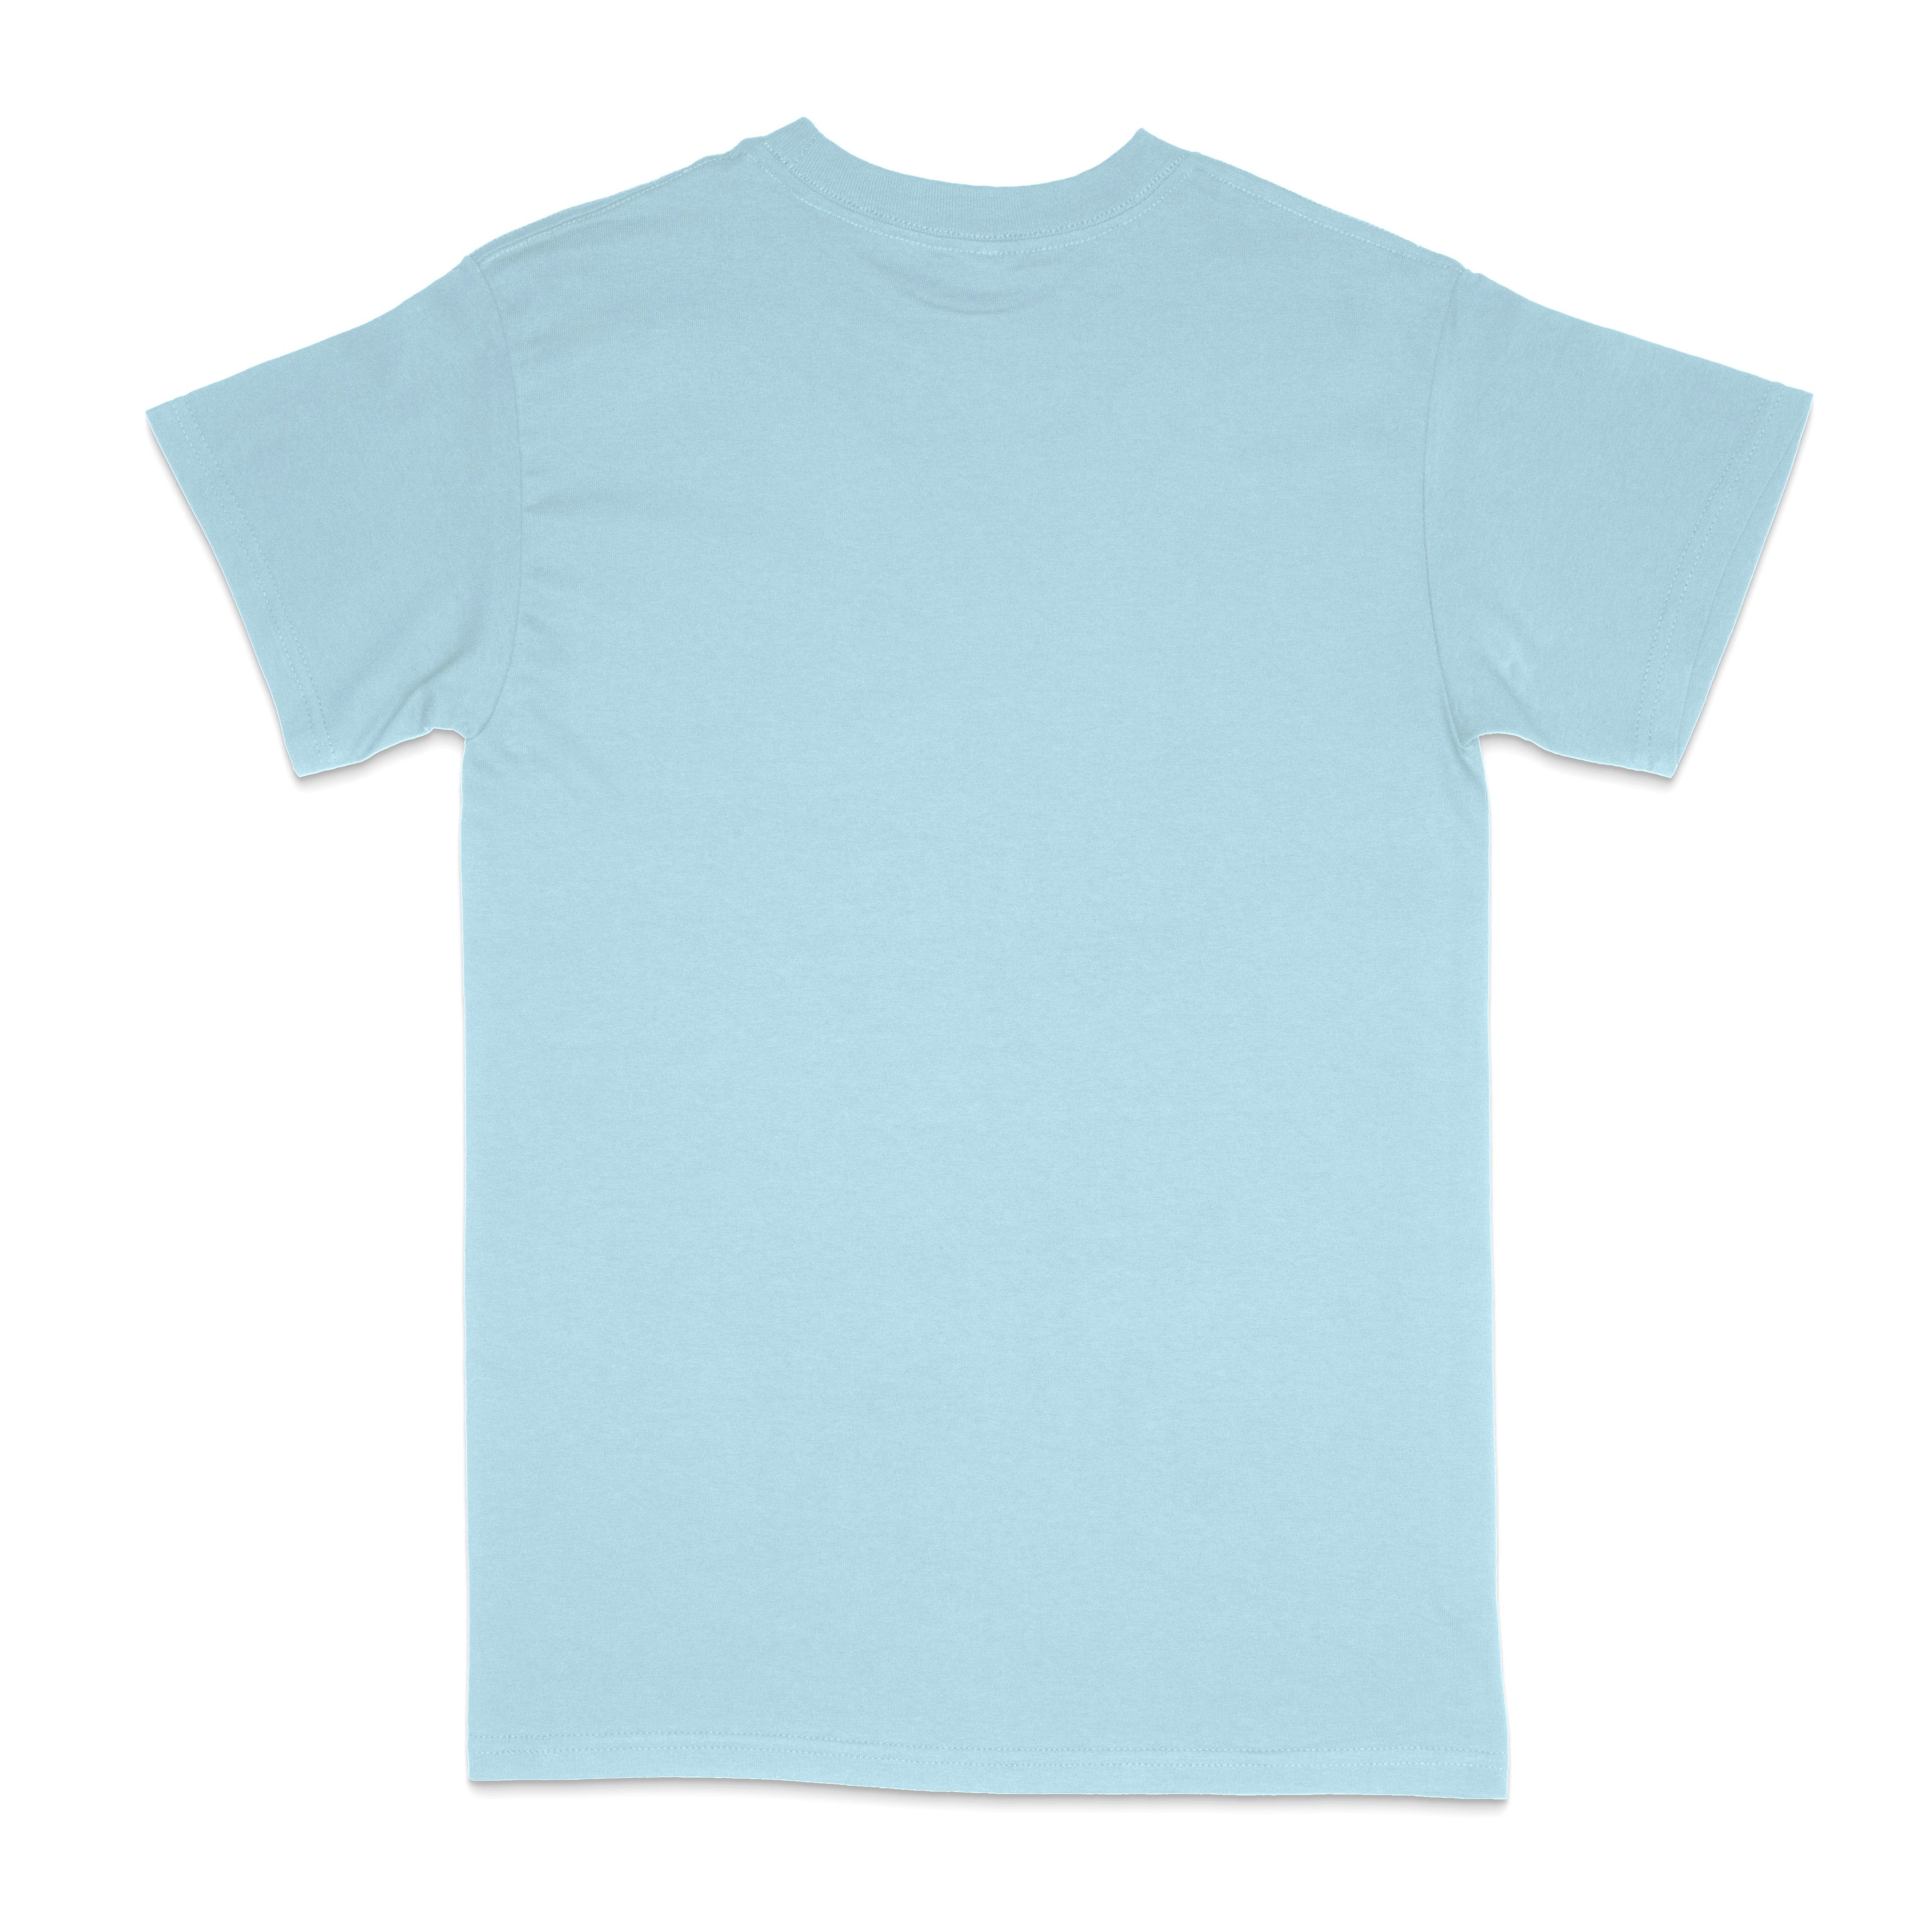 Camiseta extragrande azul bebé KAV